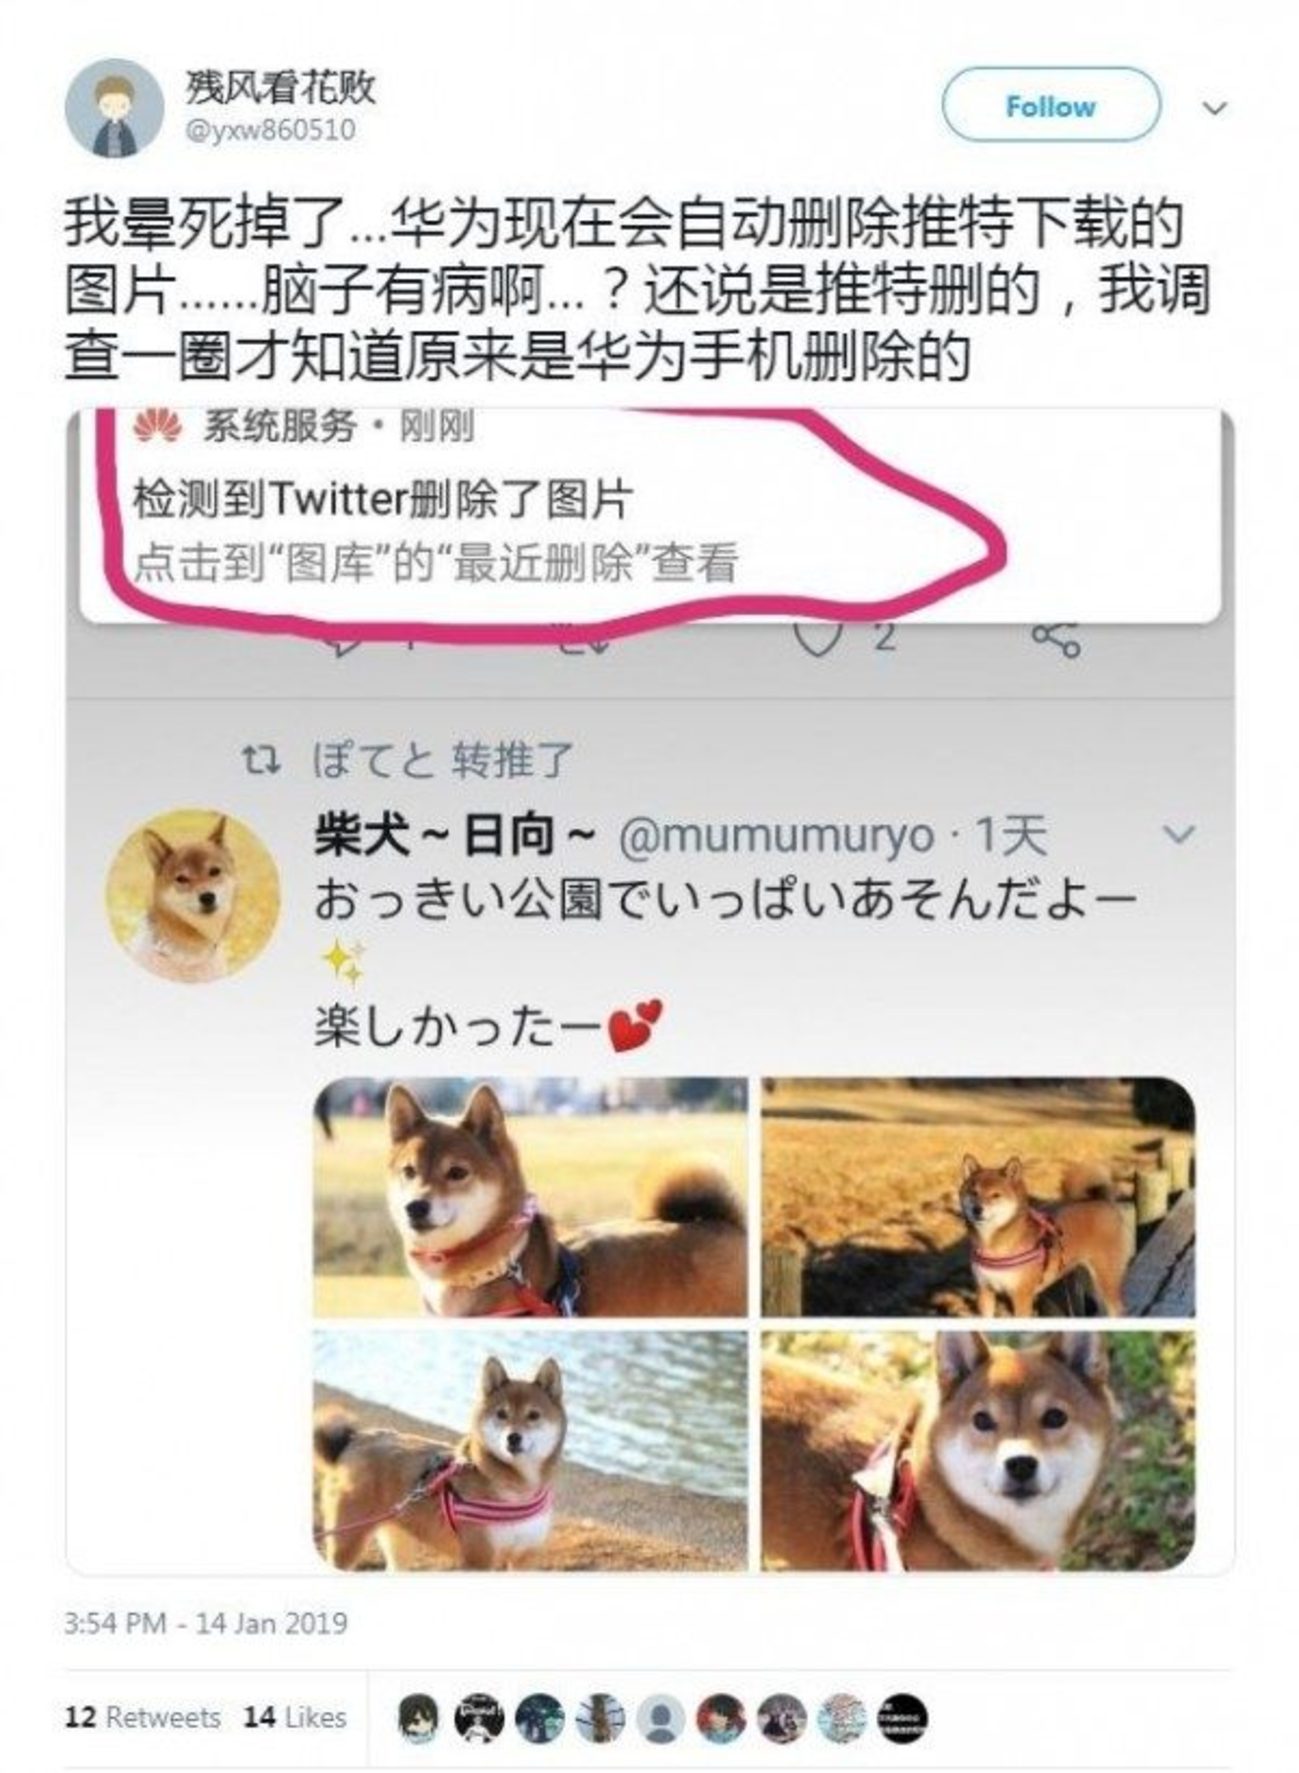 中国网友发布截图，显示他在浏览日本网友的柴犬照片，准备储存图片时，系统通知检测到推特删除图片。